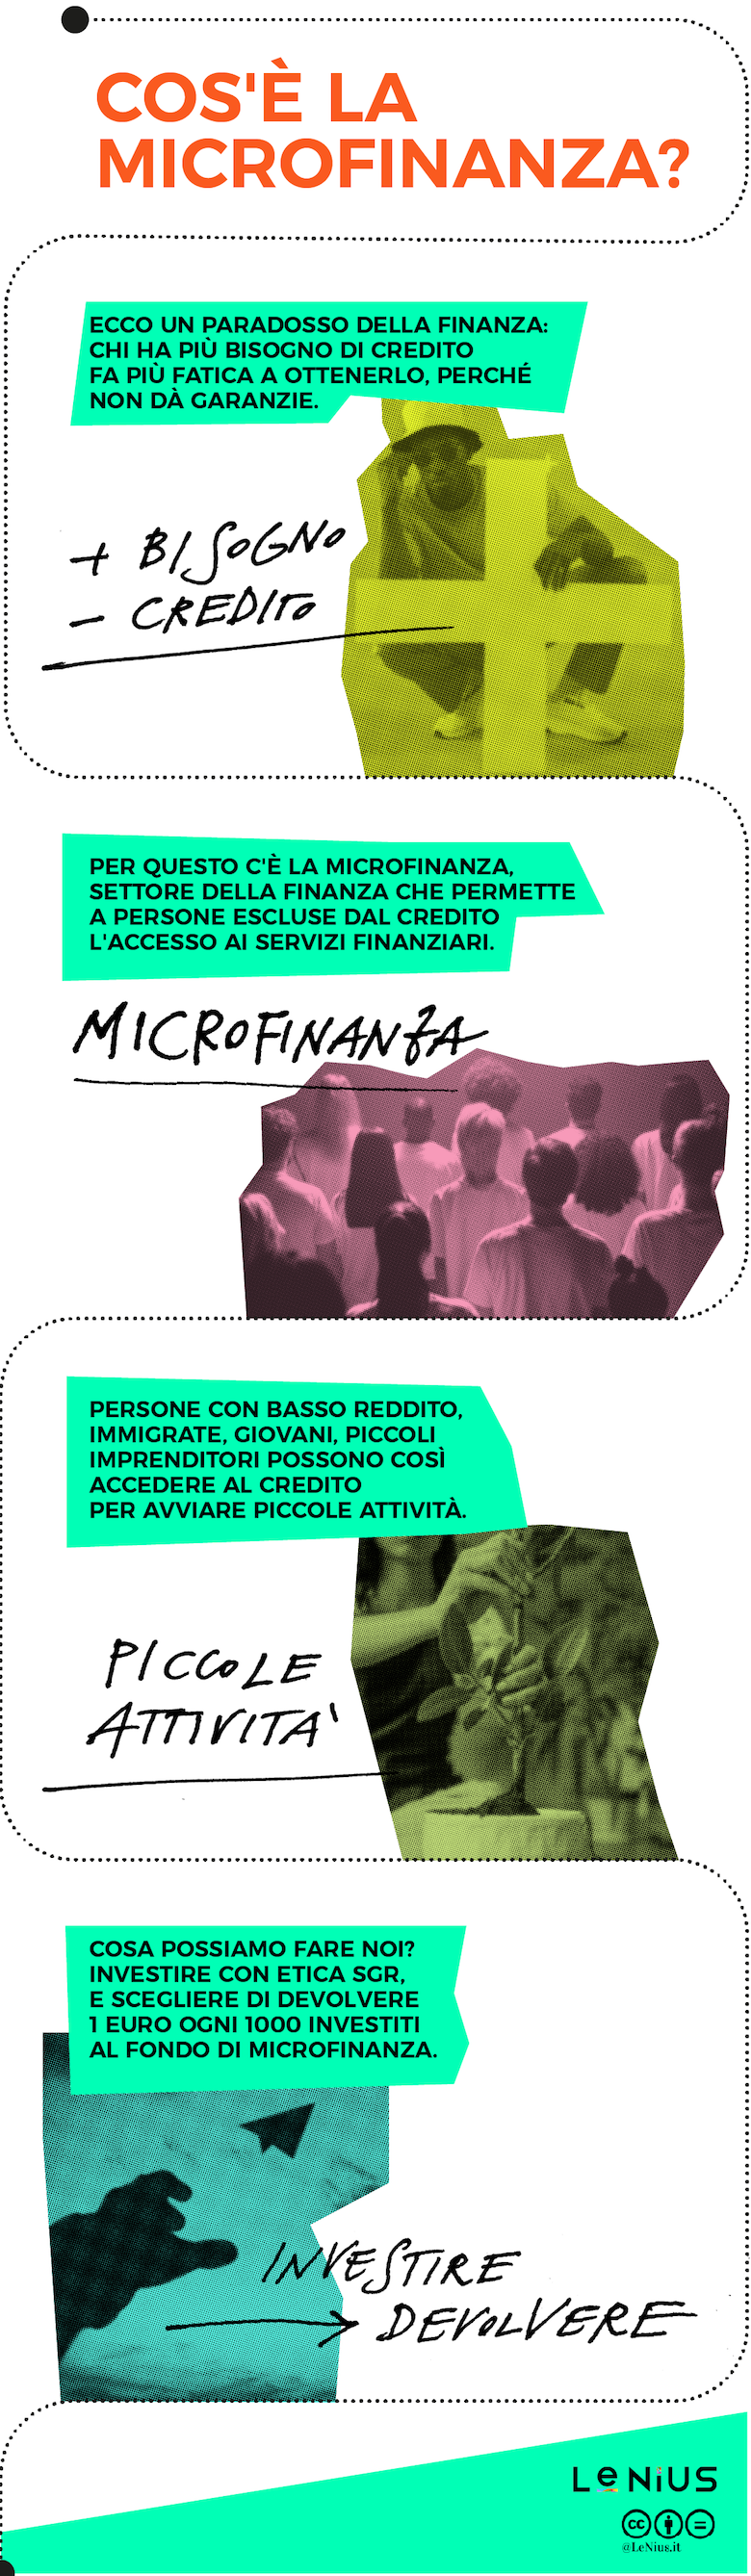 microfinanza